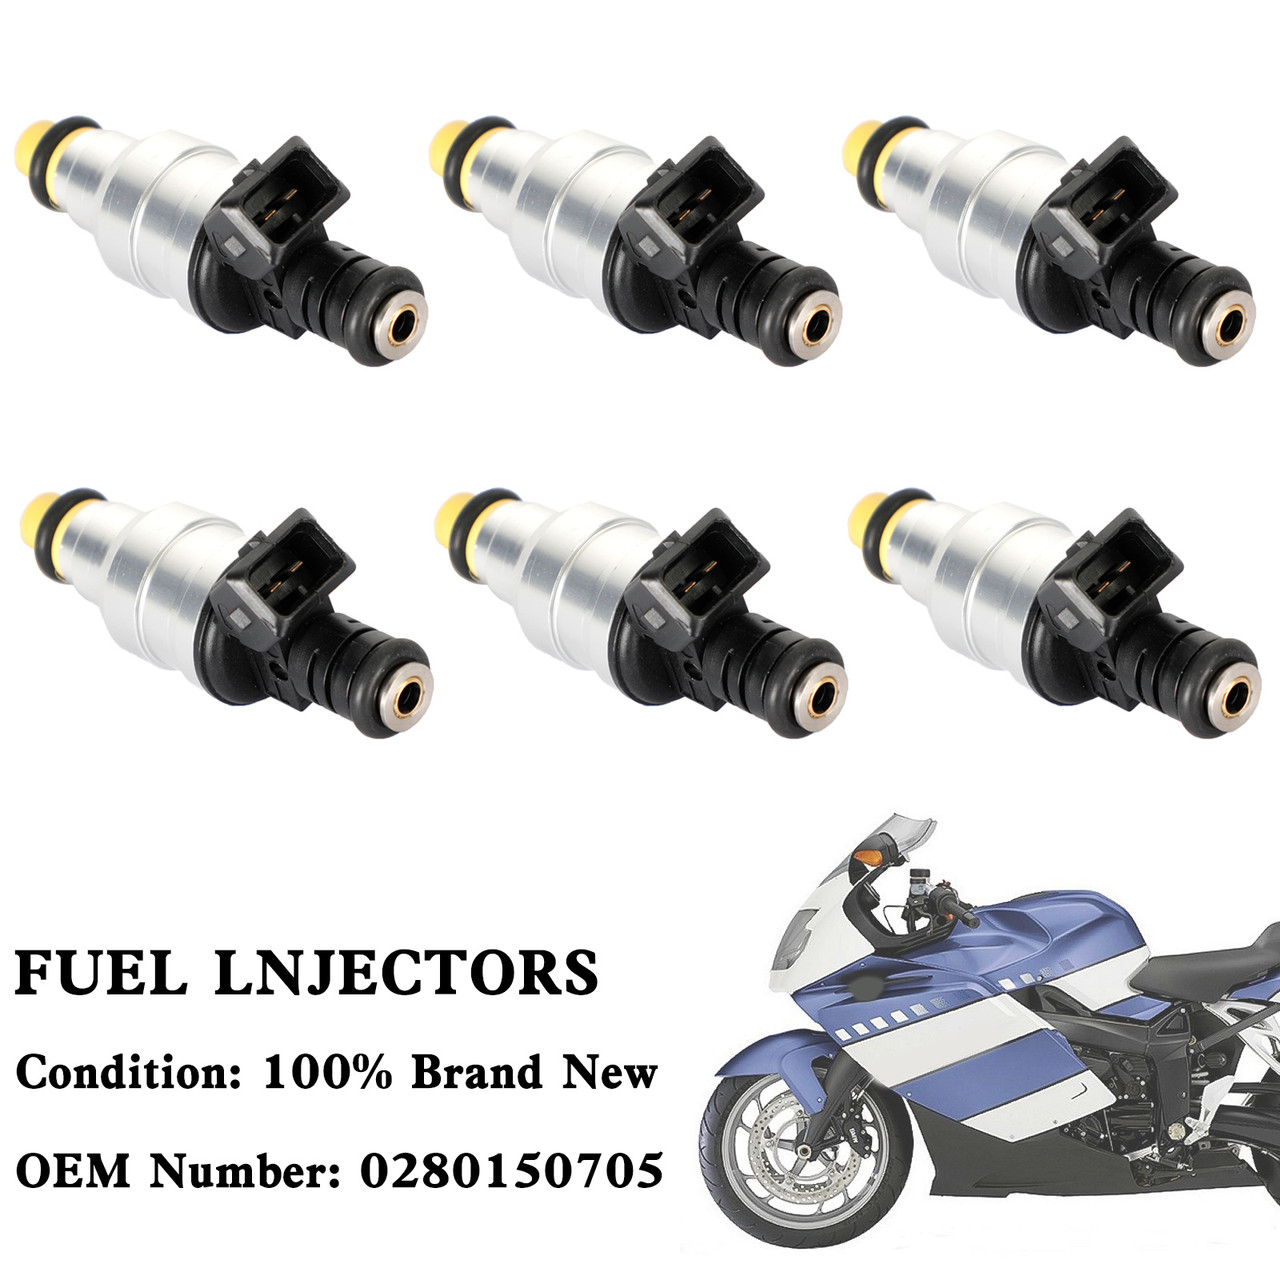 6PCS Motorcycle Fuel Injector 0280150705 For BMW K1 K100 K1100 K1200 RS LT GT